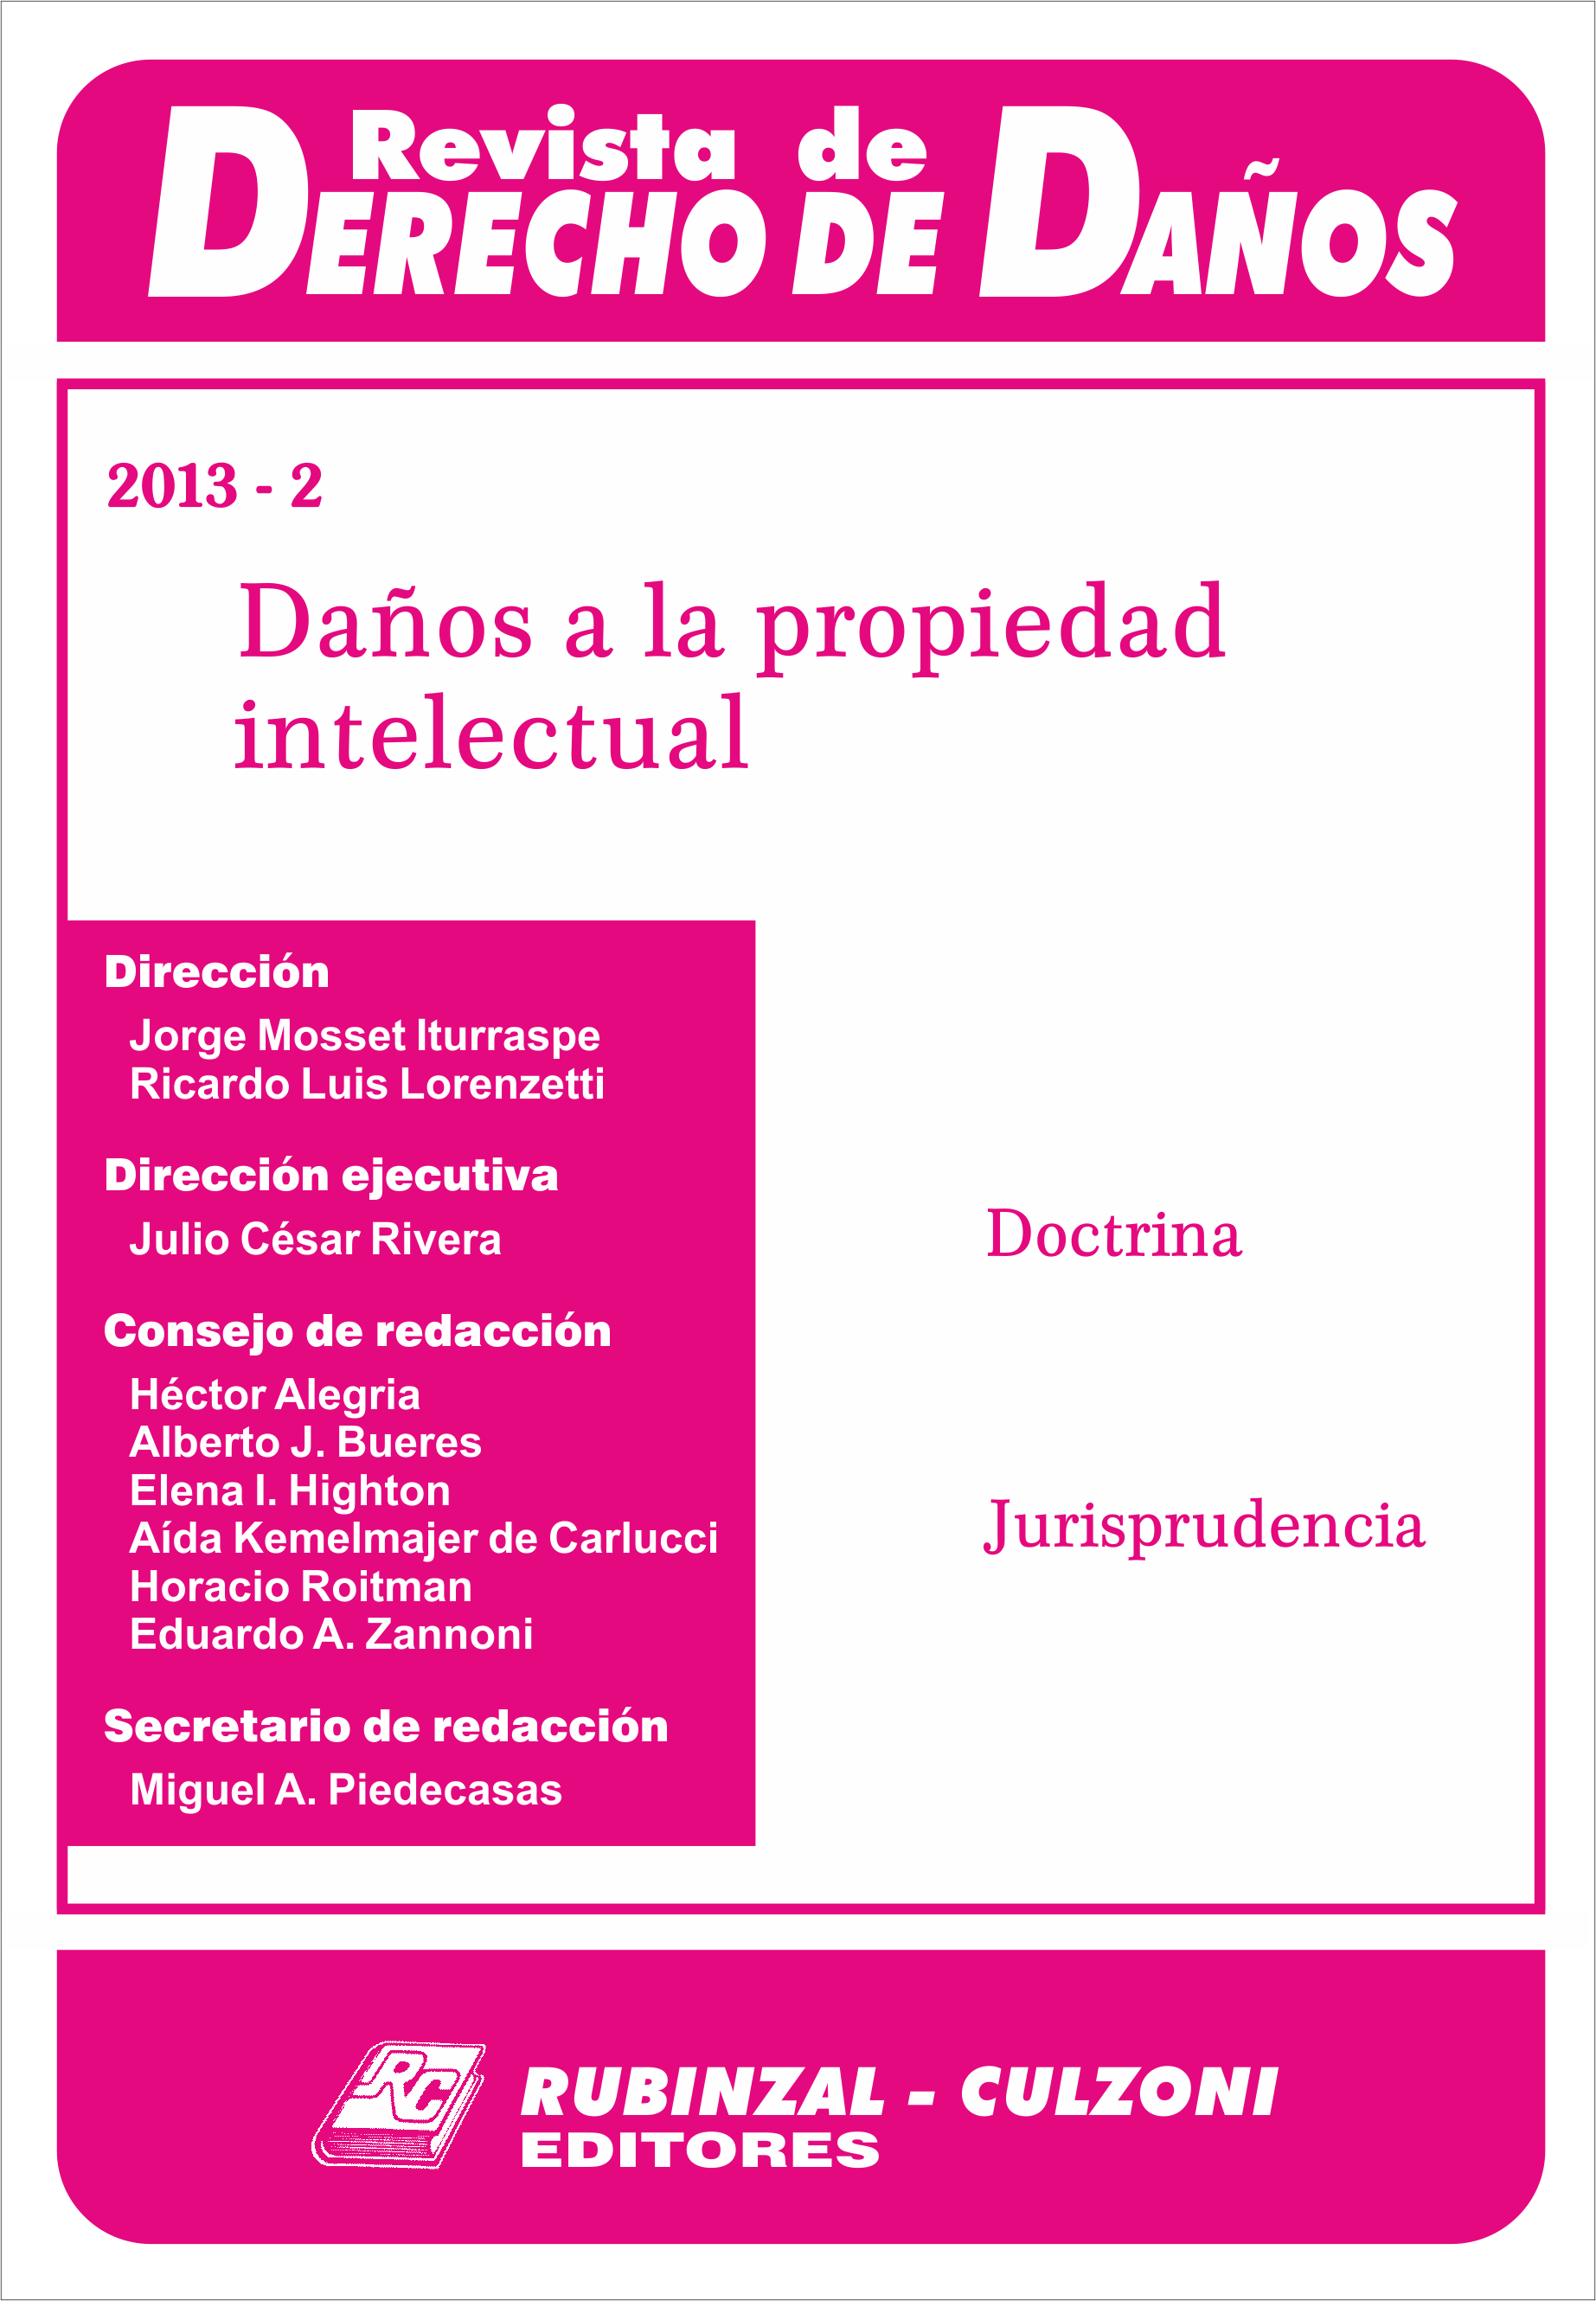 Revista de Derecho de Daños - Daños a la propiedad intelectual.